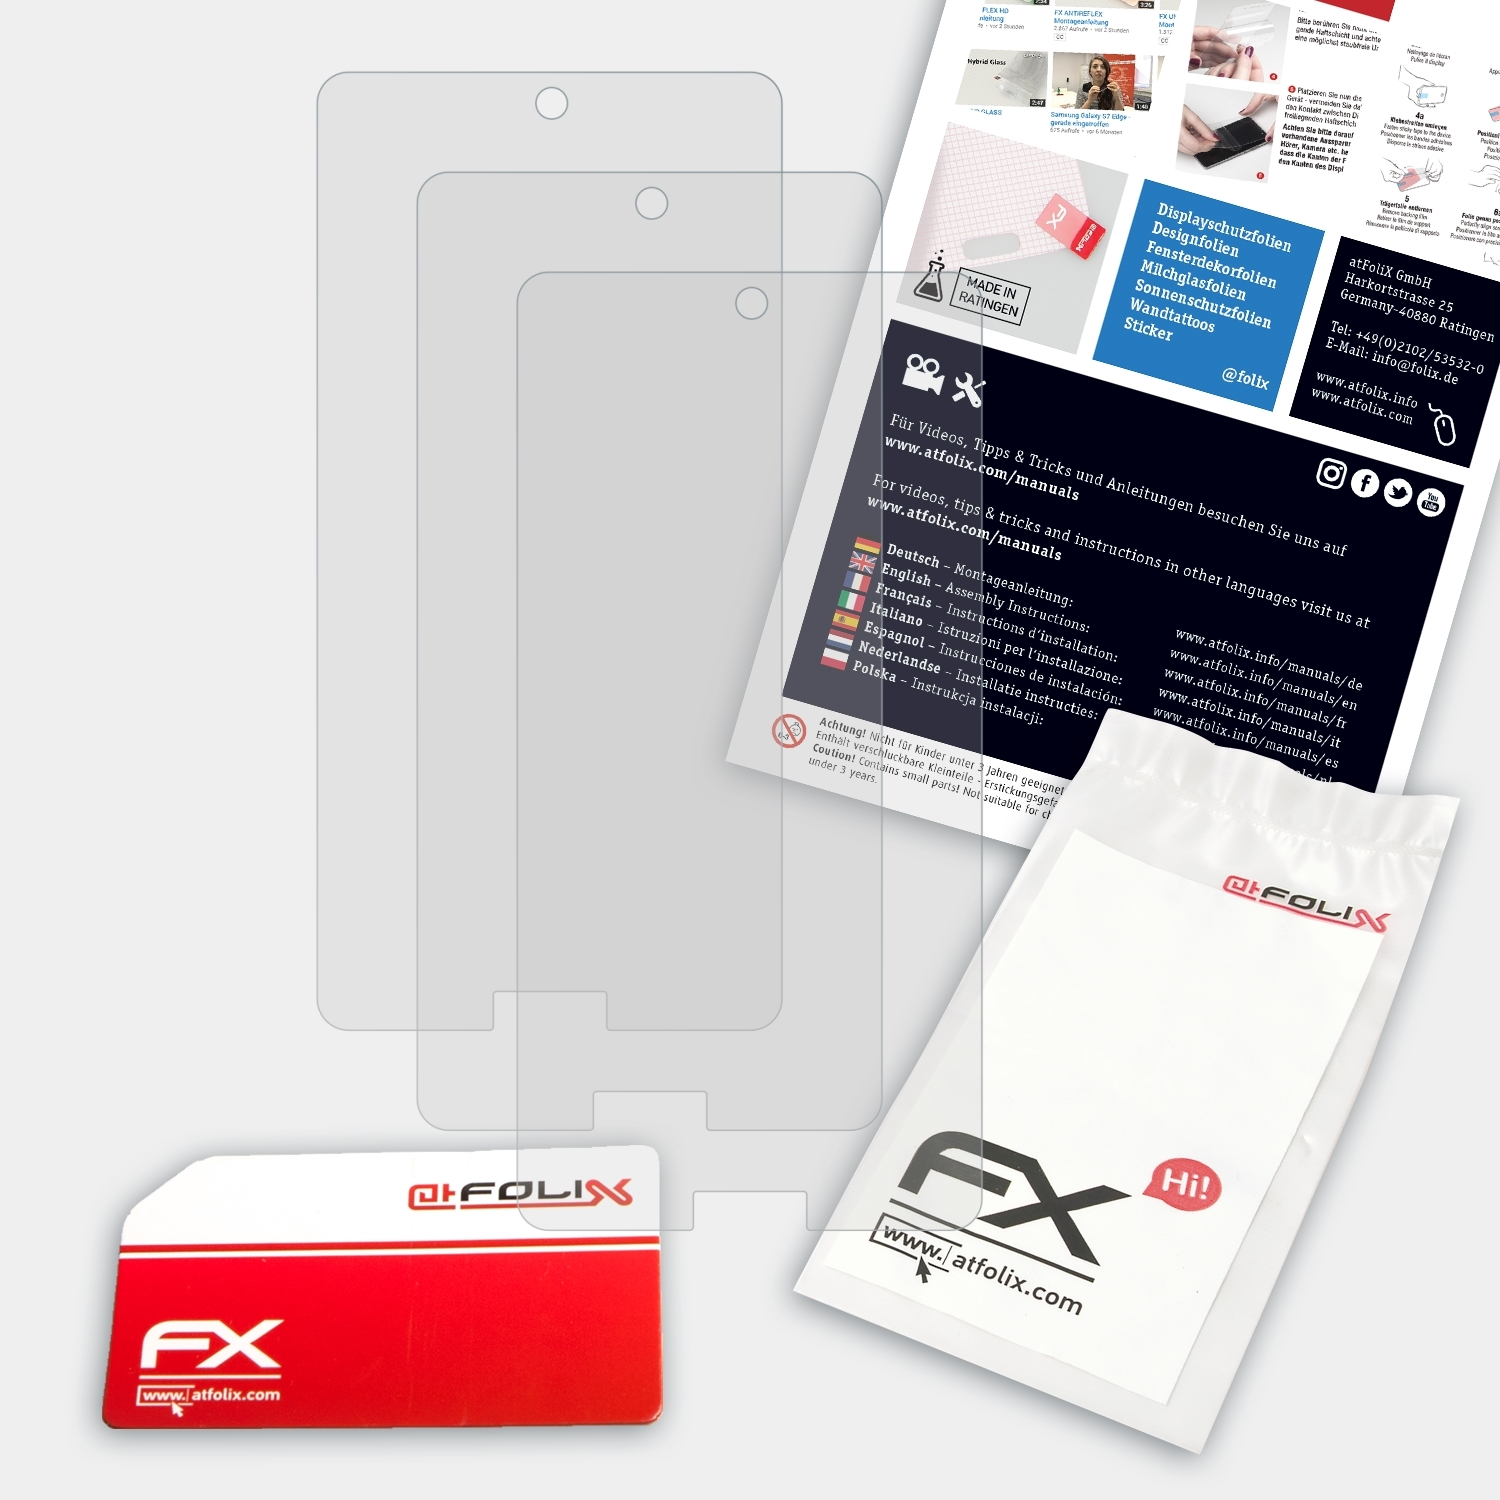 FX-Antireflex ATFOLIX 3x C10) Displayschutz(für Sharp Aquos